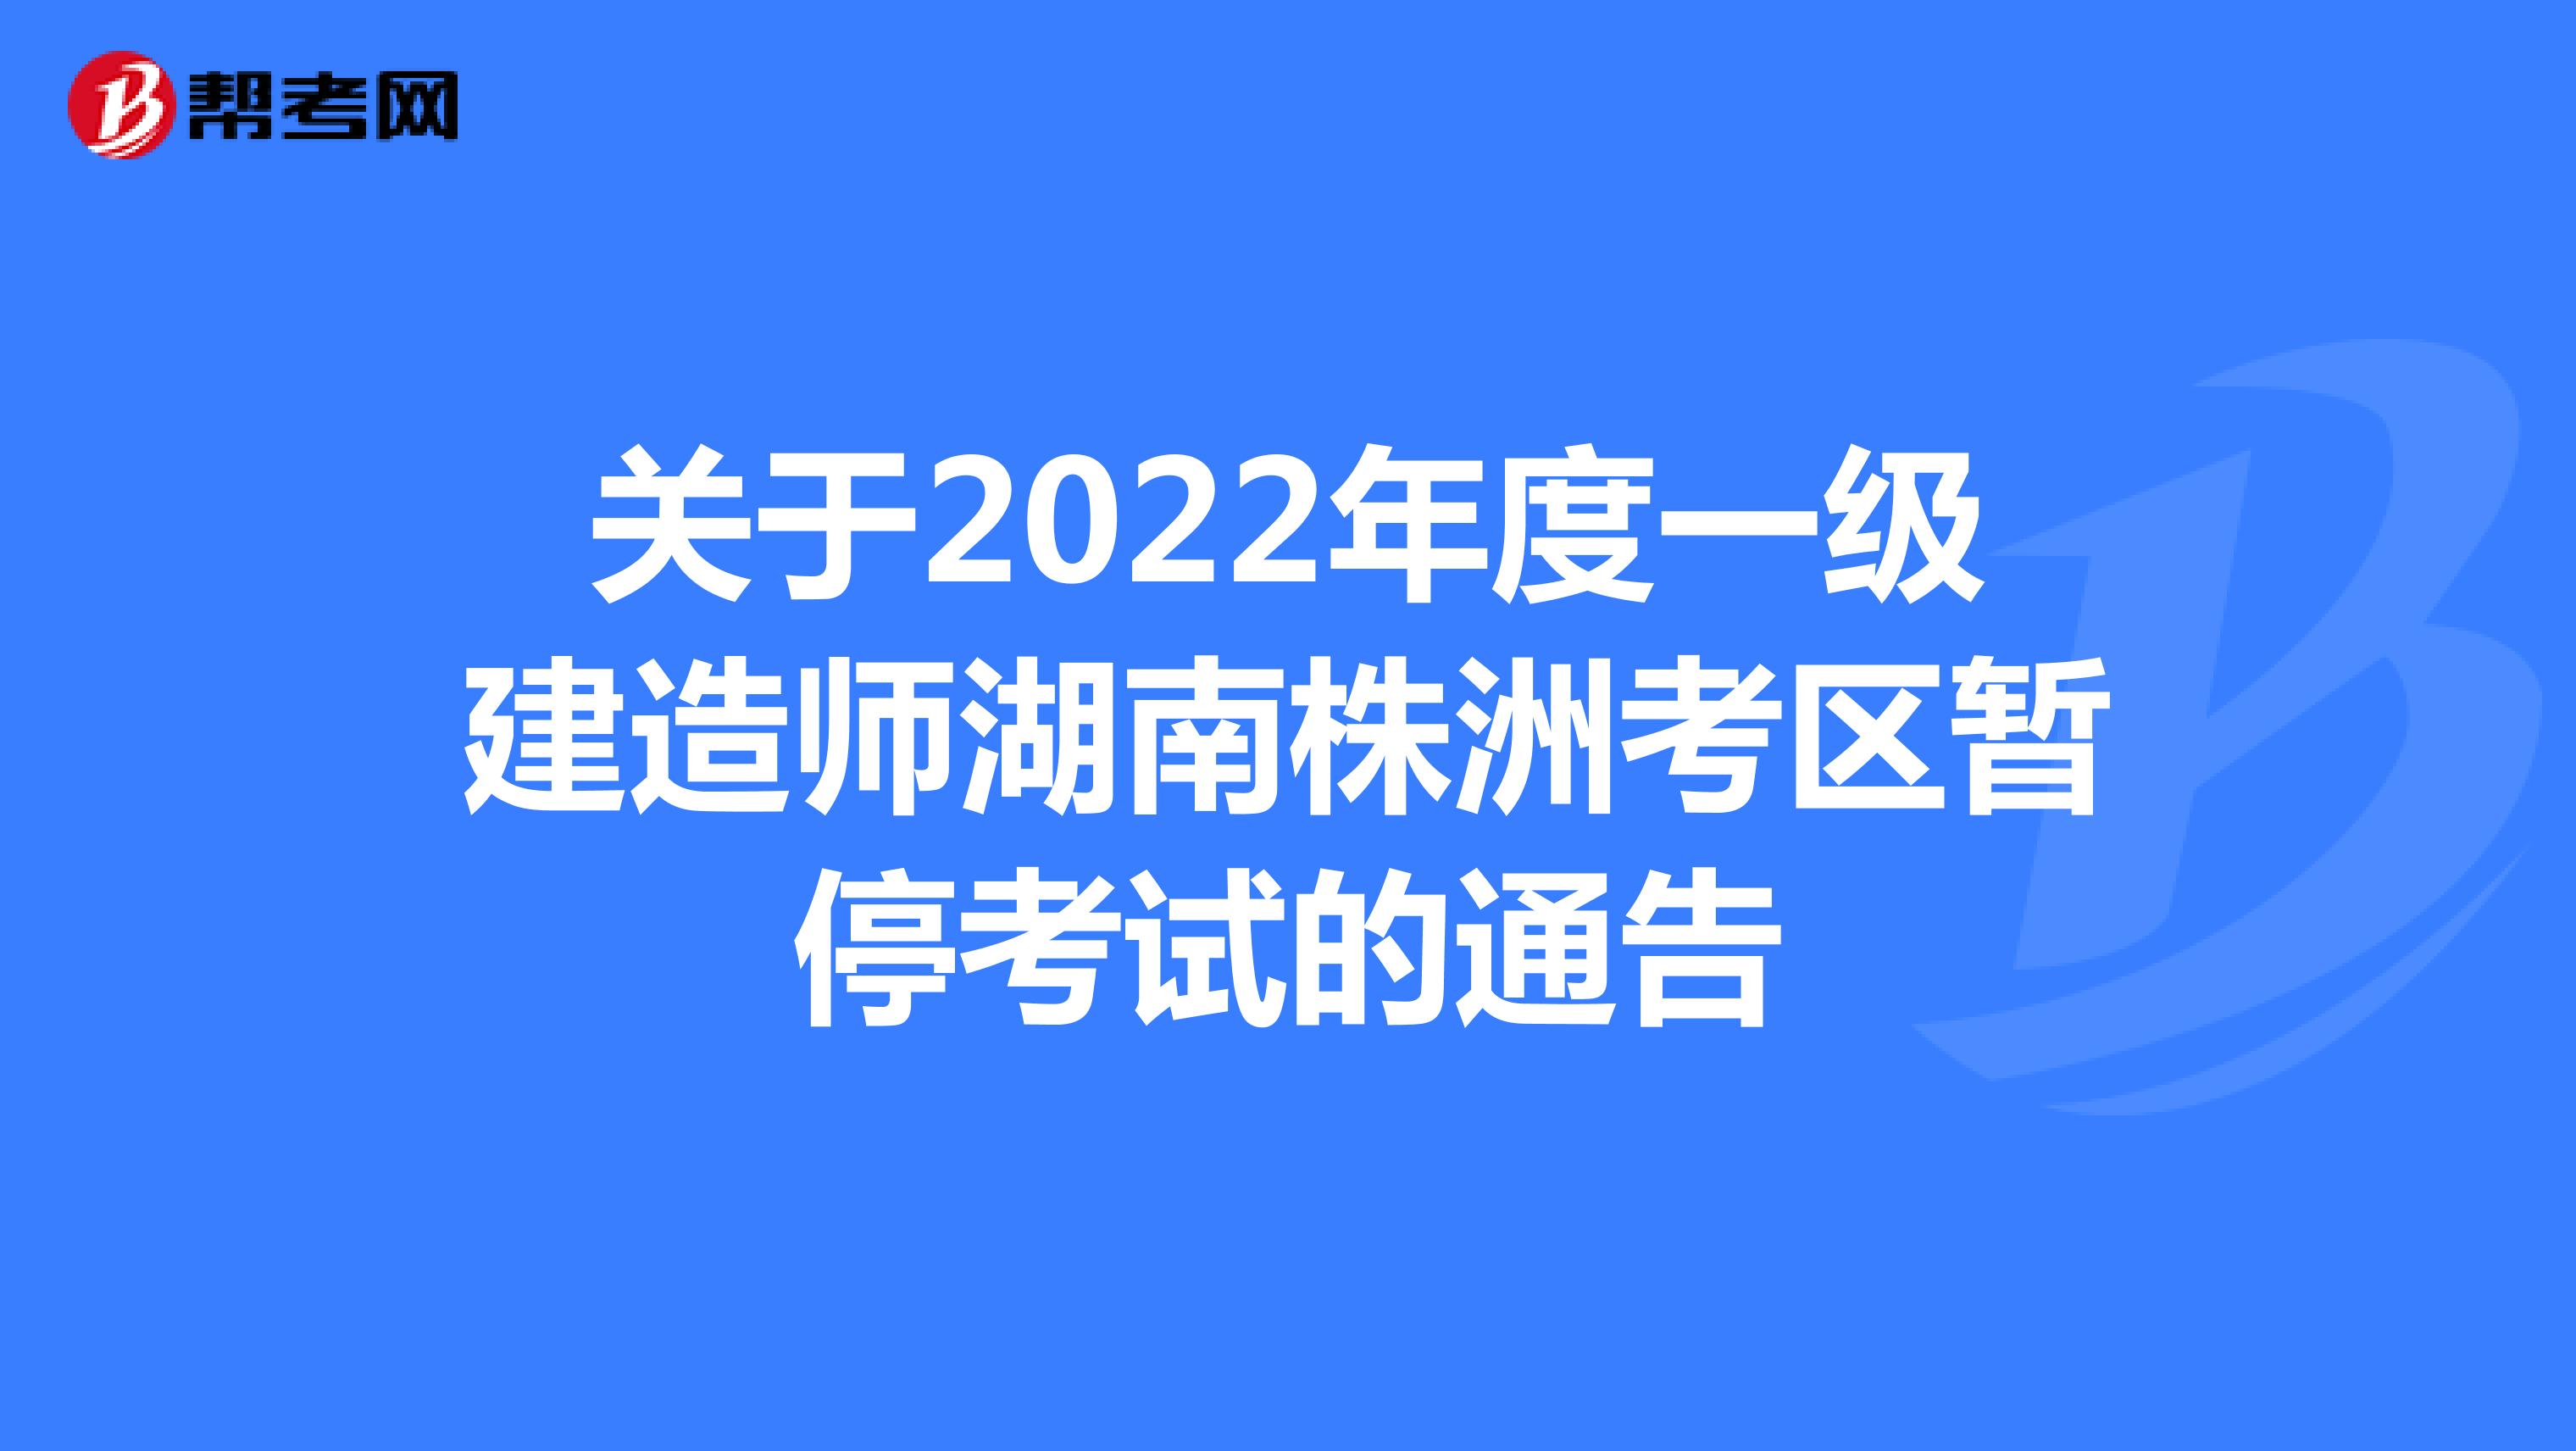 关于2022年度一级建造师湖南株洲考区暂停考试的通告